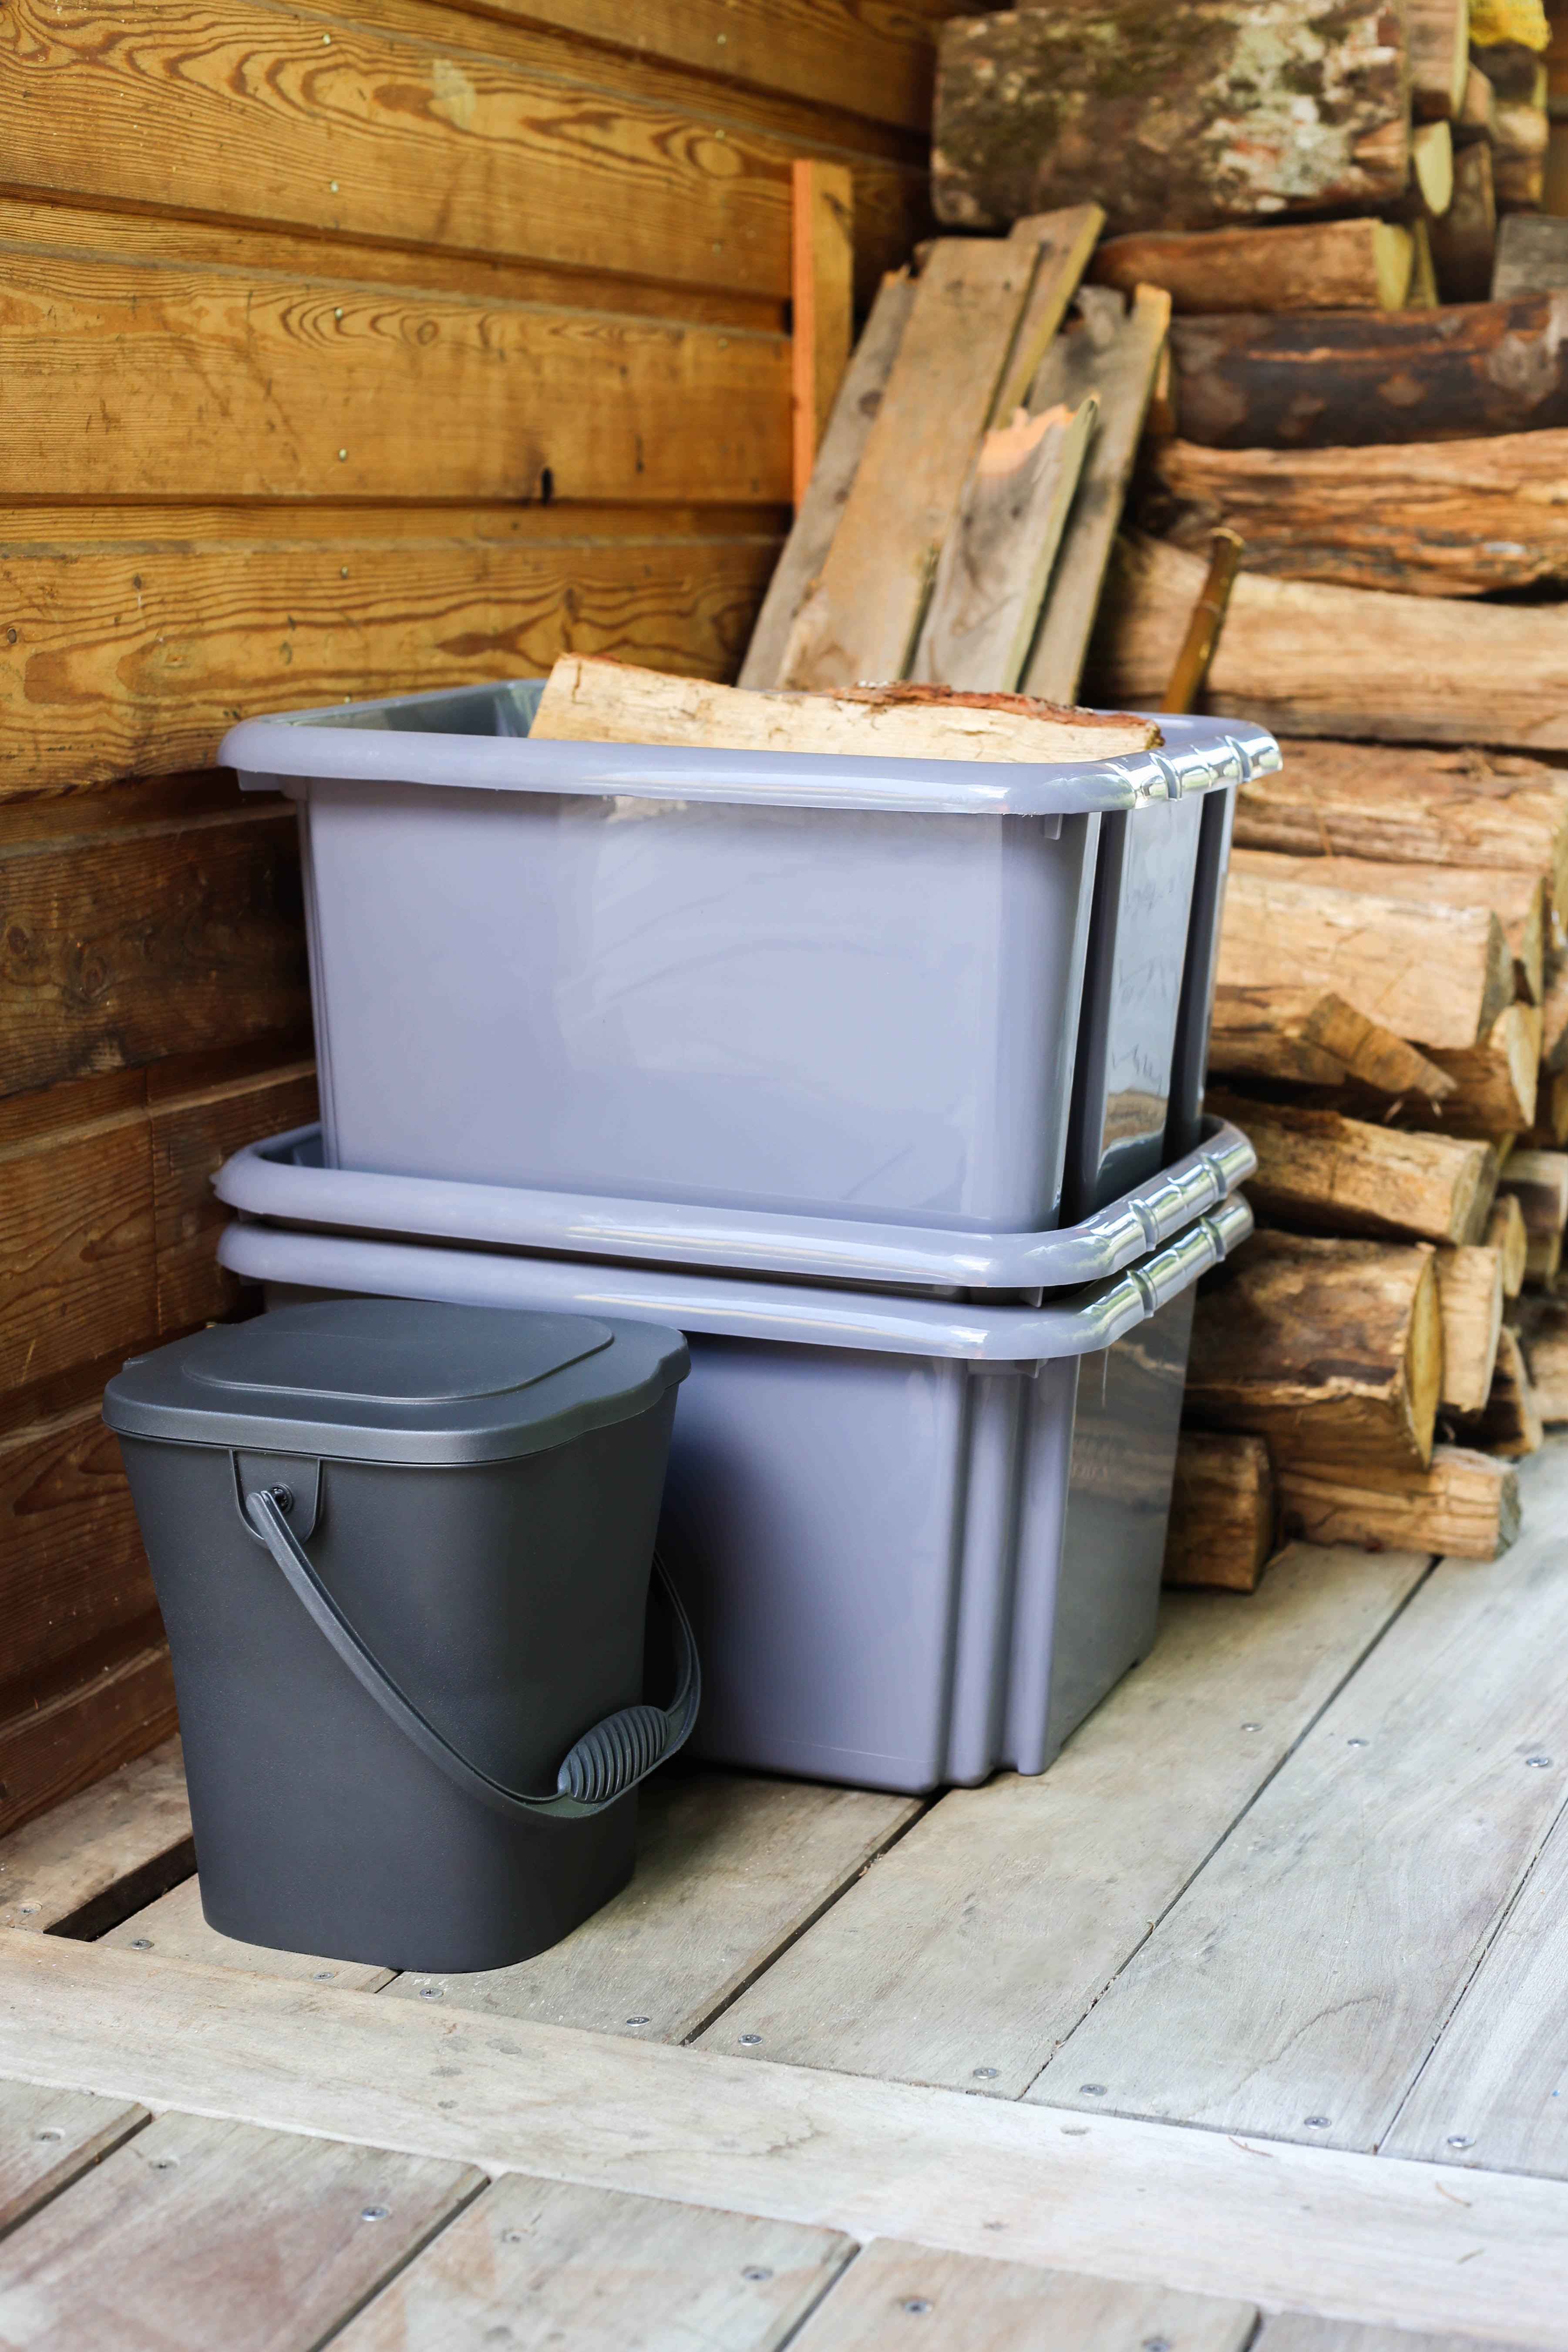 Seau à compost gris foncé - 6L : Sacs à déchets verts et poubelles